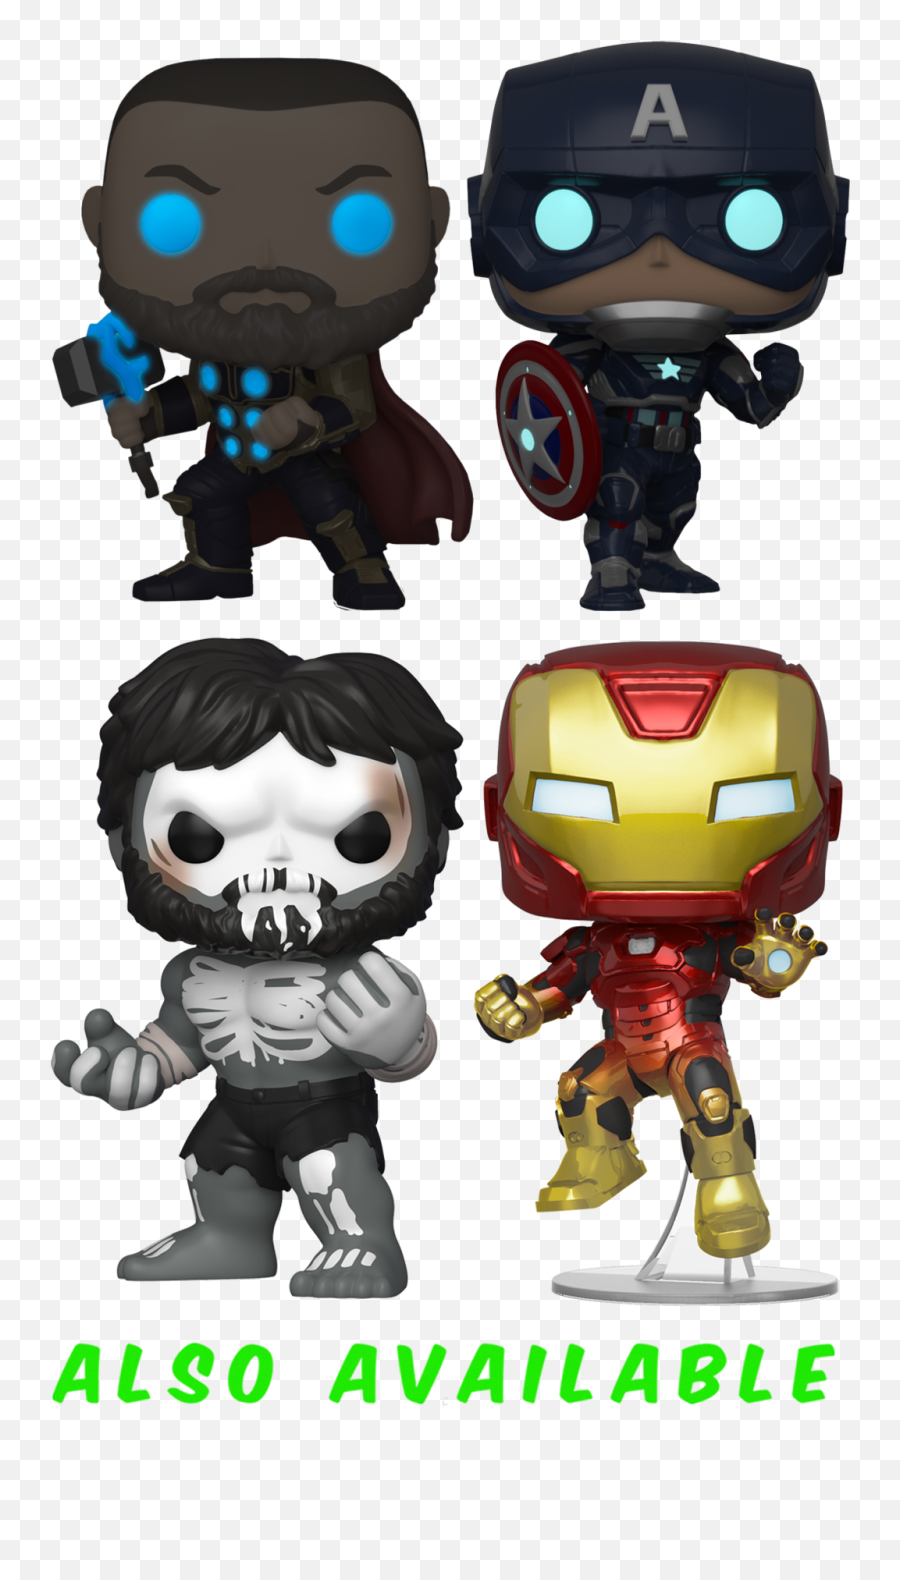 Funko Pop Marvelu0027s Avengers 2020 - Black Widow Glow In Funko Iron Man Gamerverse Emoji,Avengers Emotion Alien